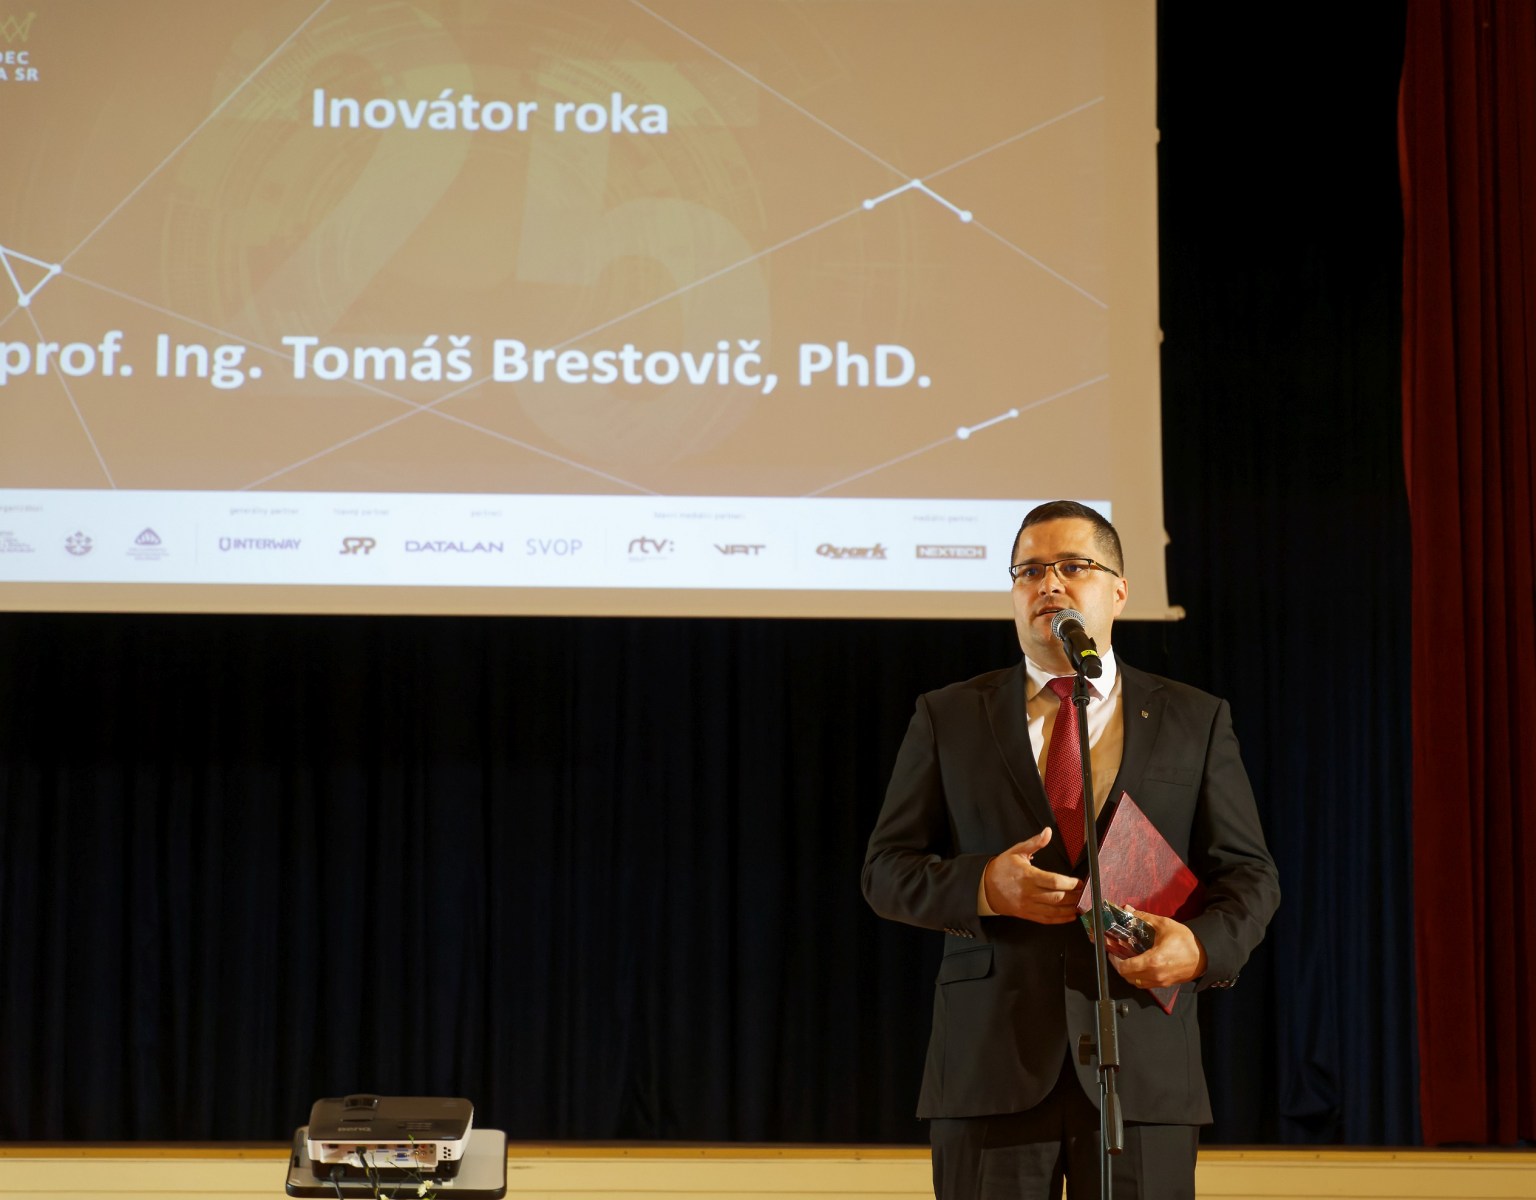 Inovátor roka: prof. Ing. Tomáš Brestovič, PhD., zo Strojníckej fakulty Technickej univerzity v Košiciach. Vedec roka SR 2021